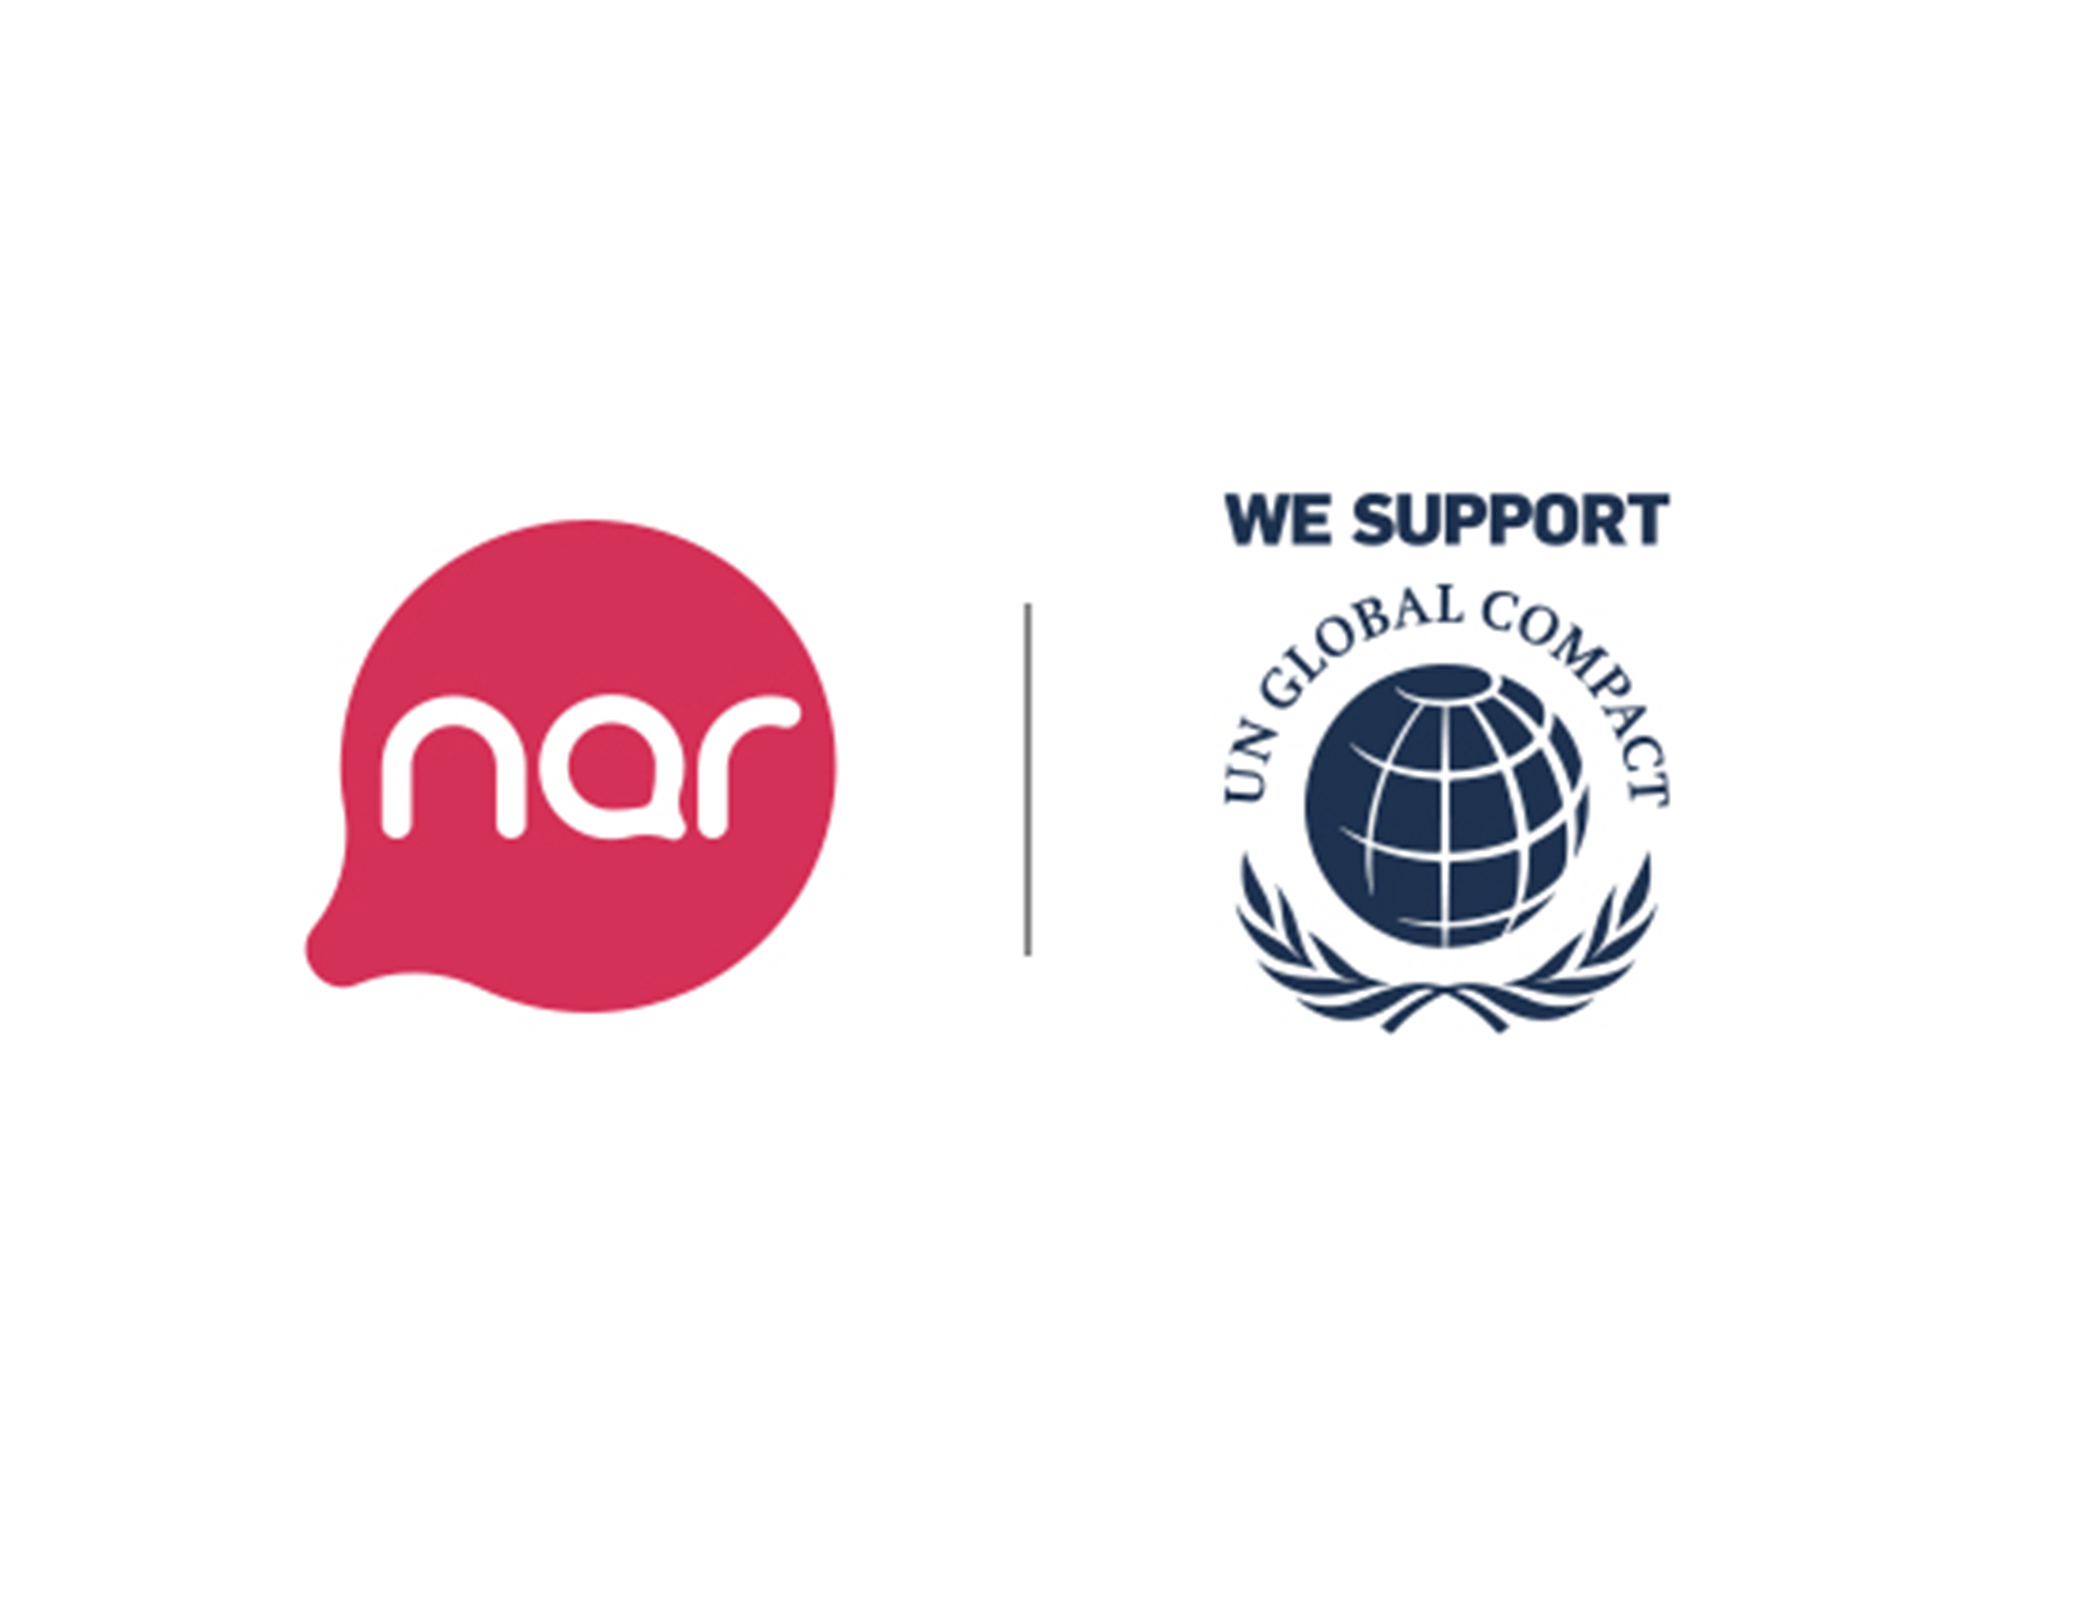 "Nar" присоединился к Глобальному договору ООН в поддержку целей устойчивого развития